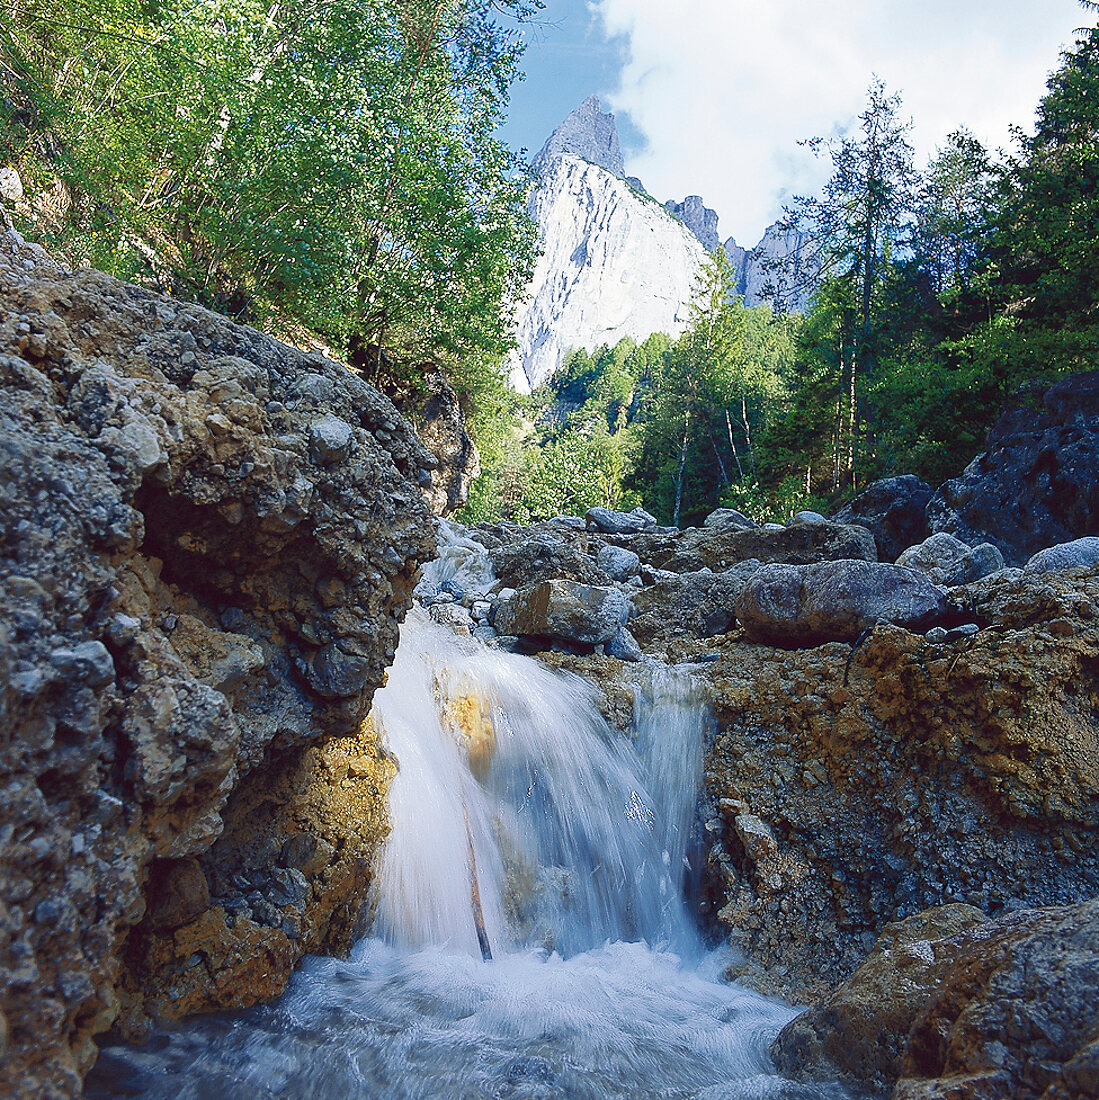 Wasserfall in einem Wandergebiet bei Seis, Süd-Tirol, Italien